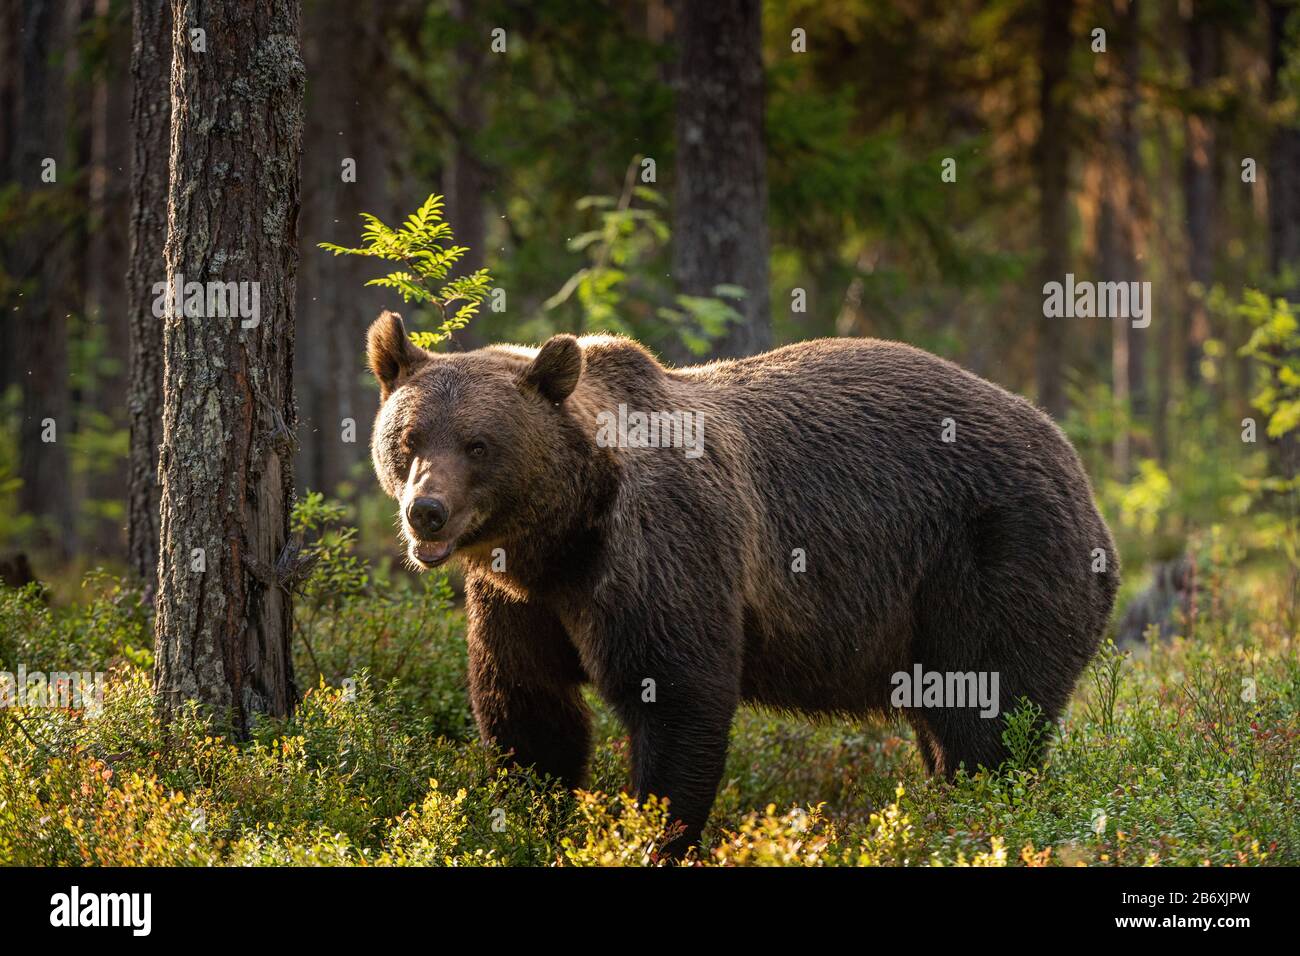 Mâle adulte d'ours brun dans la forêt de pins. Nom scientifique: Ursus arctos. Habitat naturel. Banque D'Images